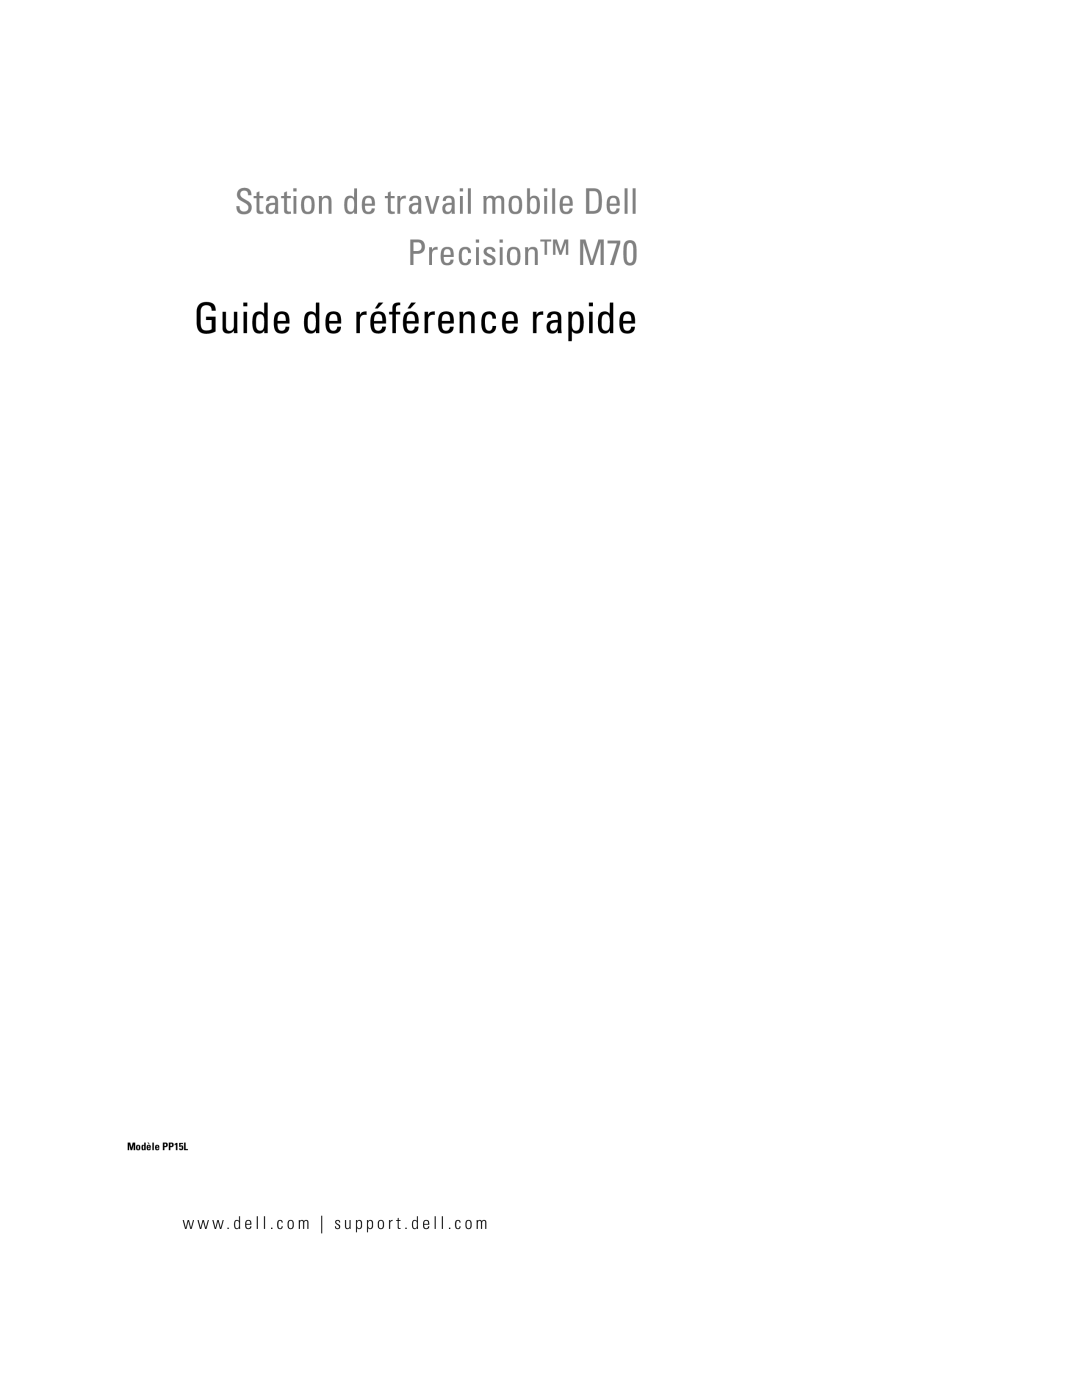 Dell M70 Mobile manual Guide de référence rapide 